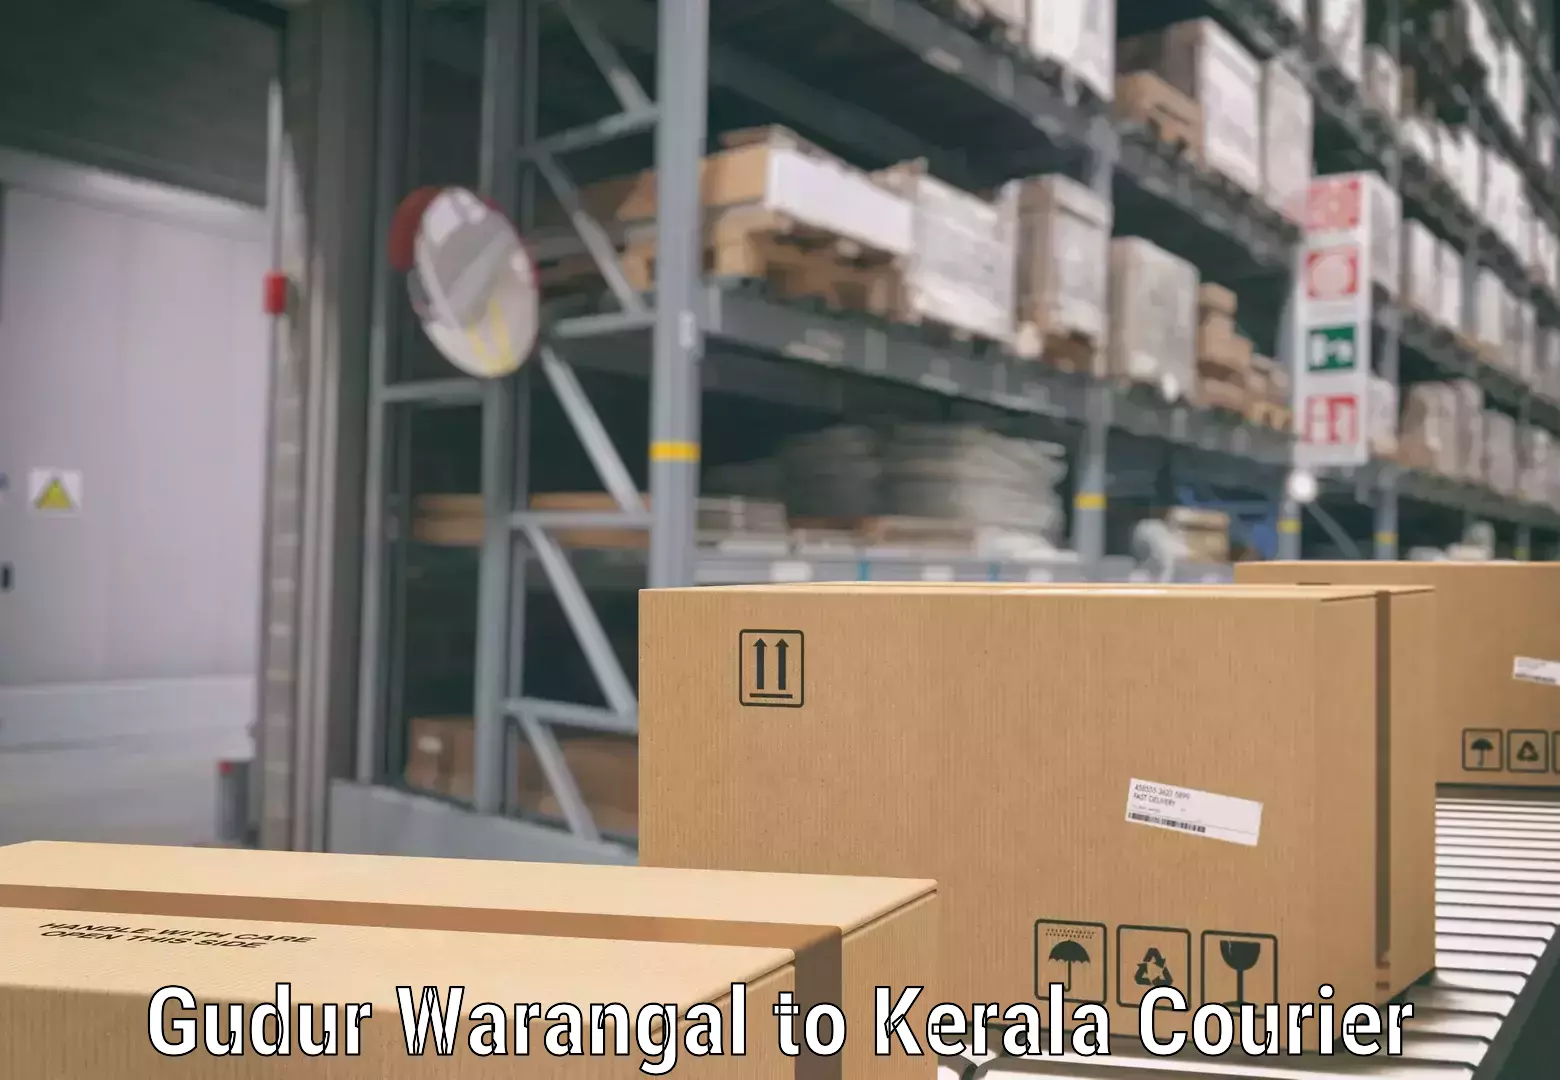 Luggage shipping service Gudur Warangal to Tirur